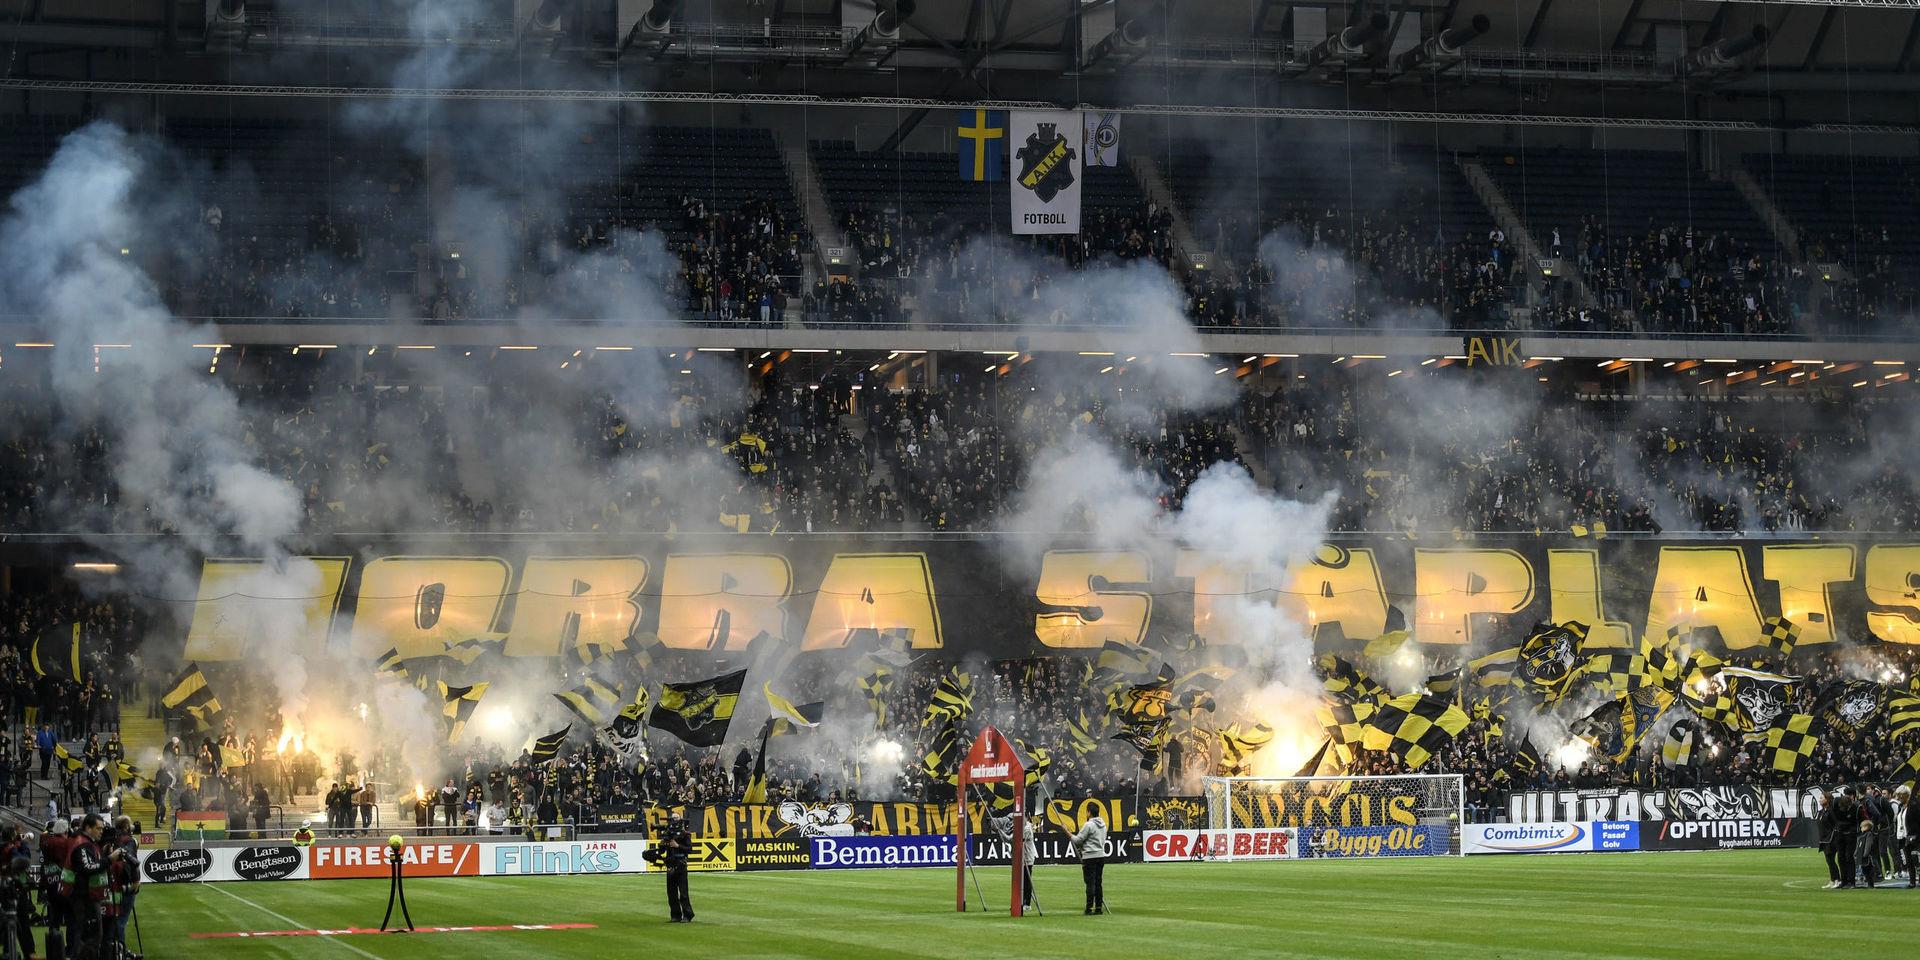 Norra stå på Friends arena kommer gapa tomt när AIK möter Sheriff i kvalet till Europa League. Detta som en protest mot att polisen dragit ner på antalet tillgängliga platser. Arkivbild.